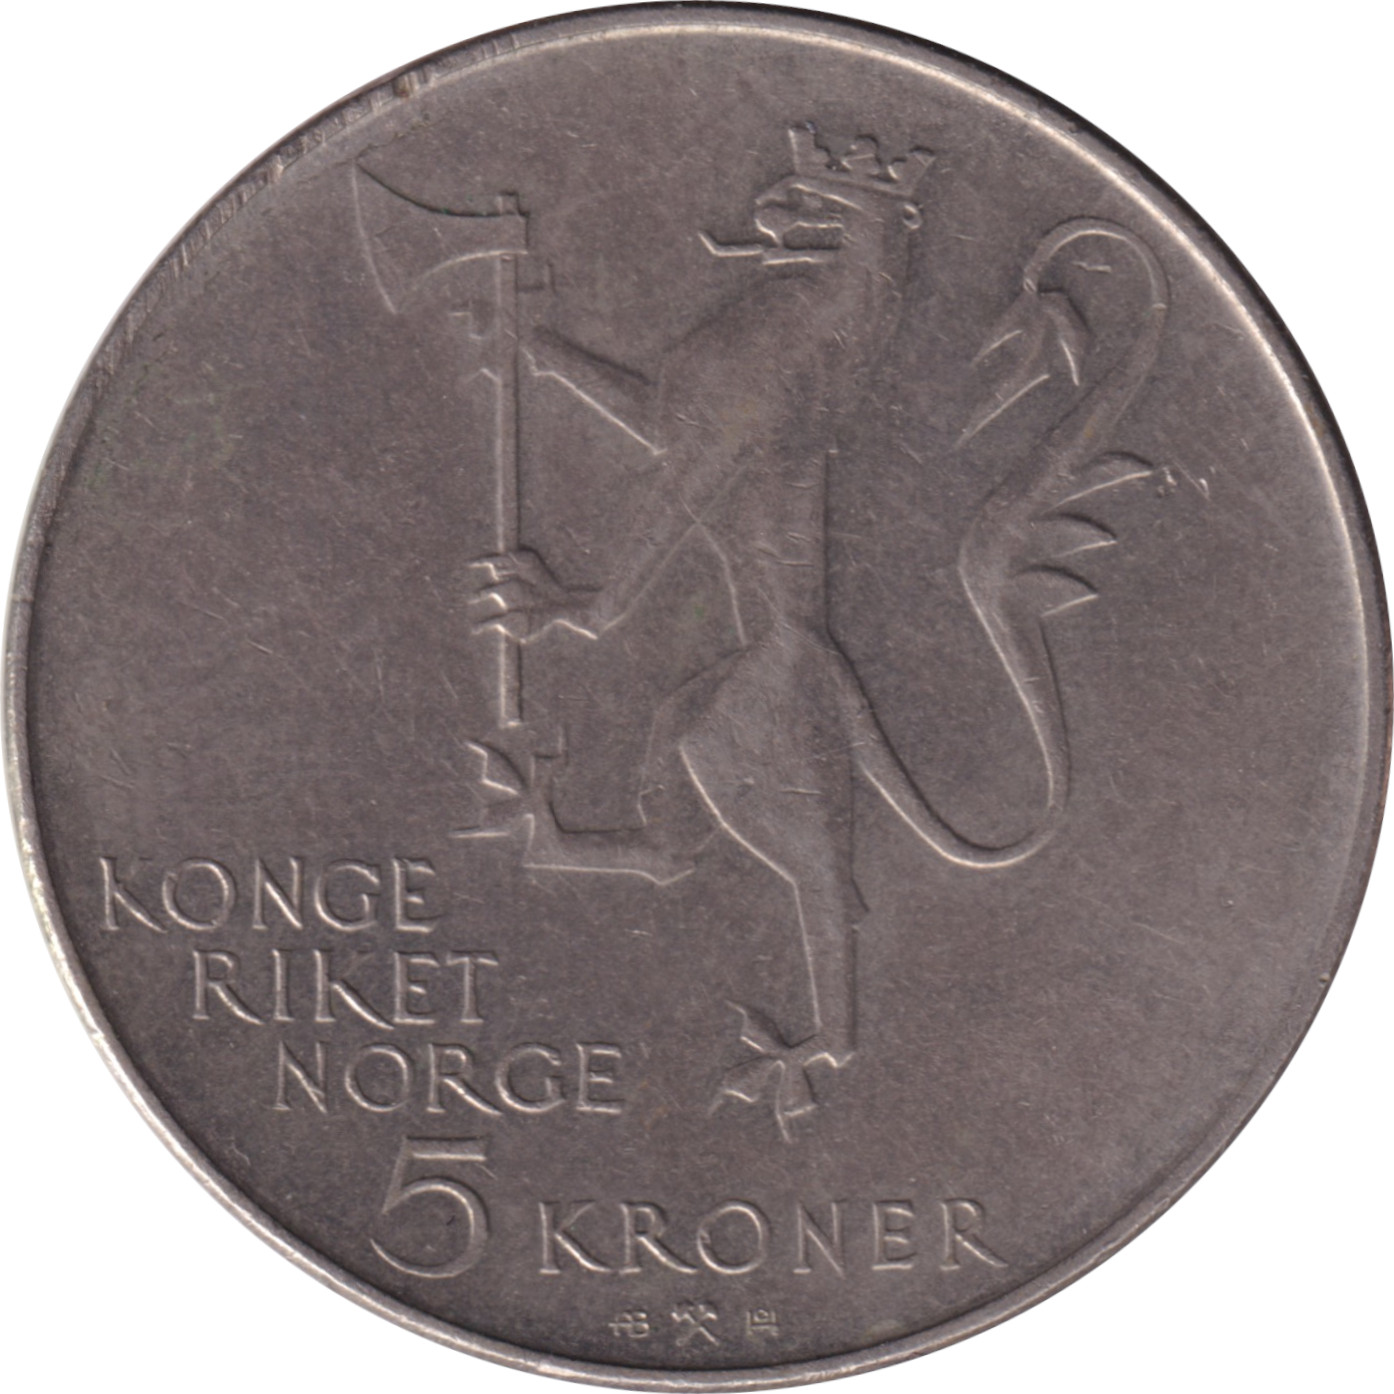 5 kroner - Armée - 350 years